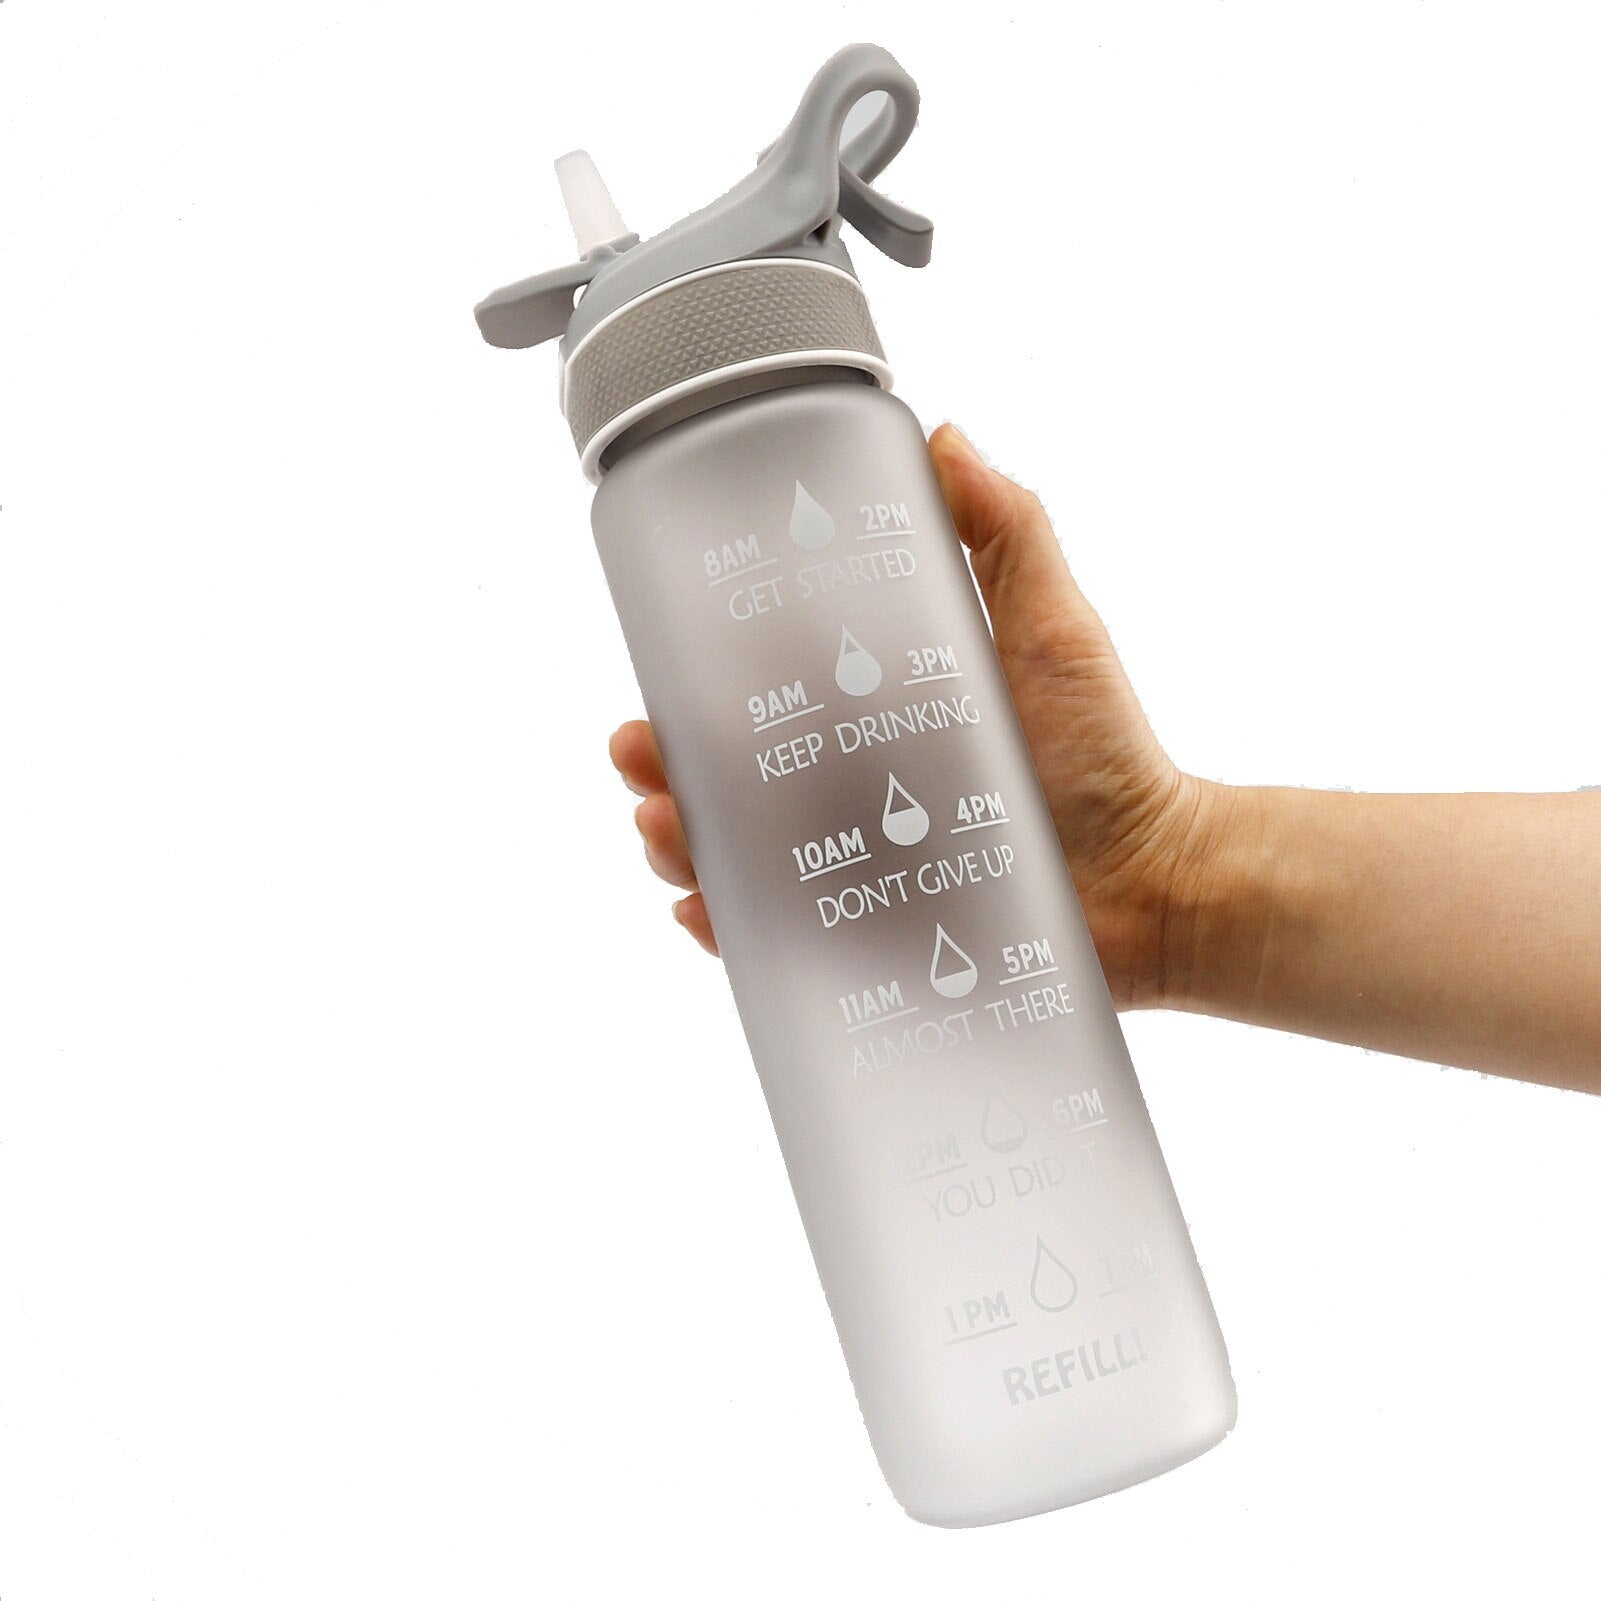 Eine Hand haelt eine Sporttrinkflasche mit einer Farbe Grau und Zeitmarkierung zur Fluessigkeitsverfolgung.